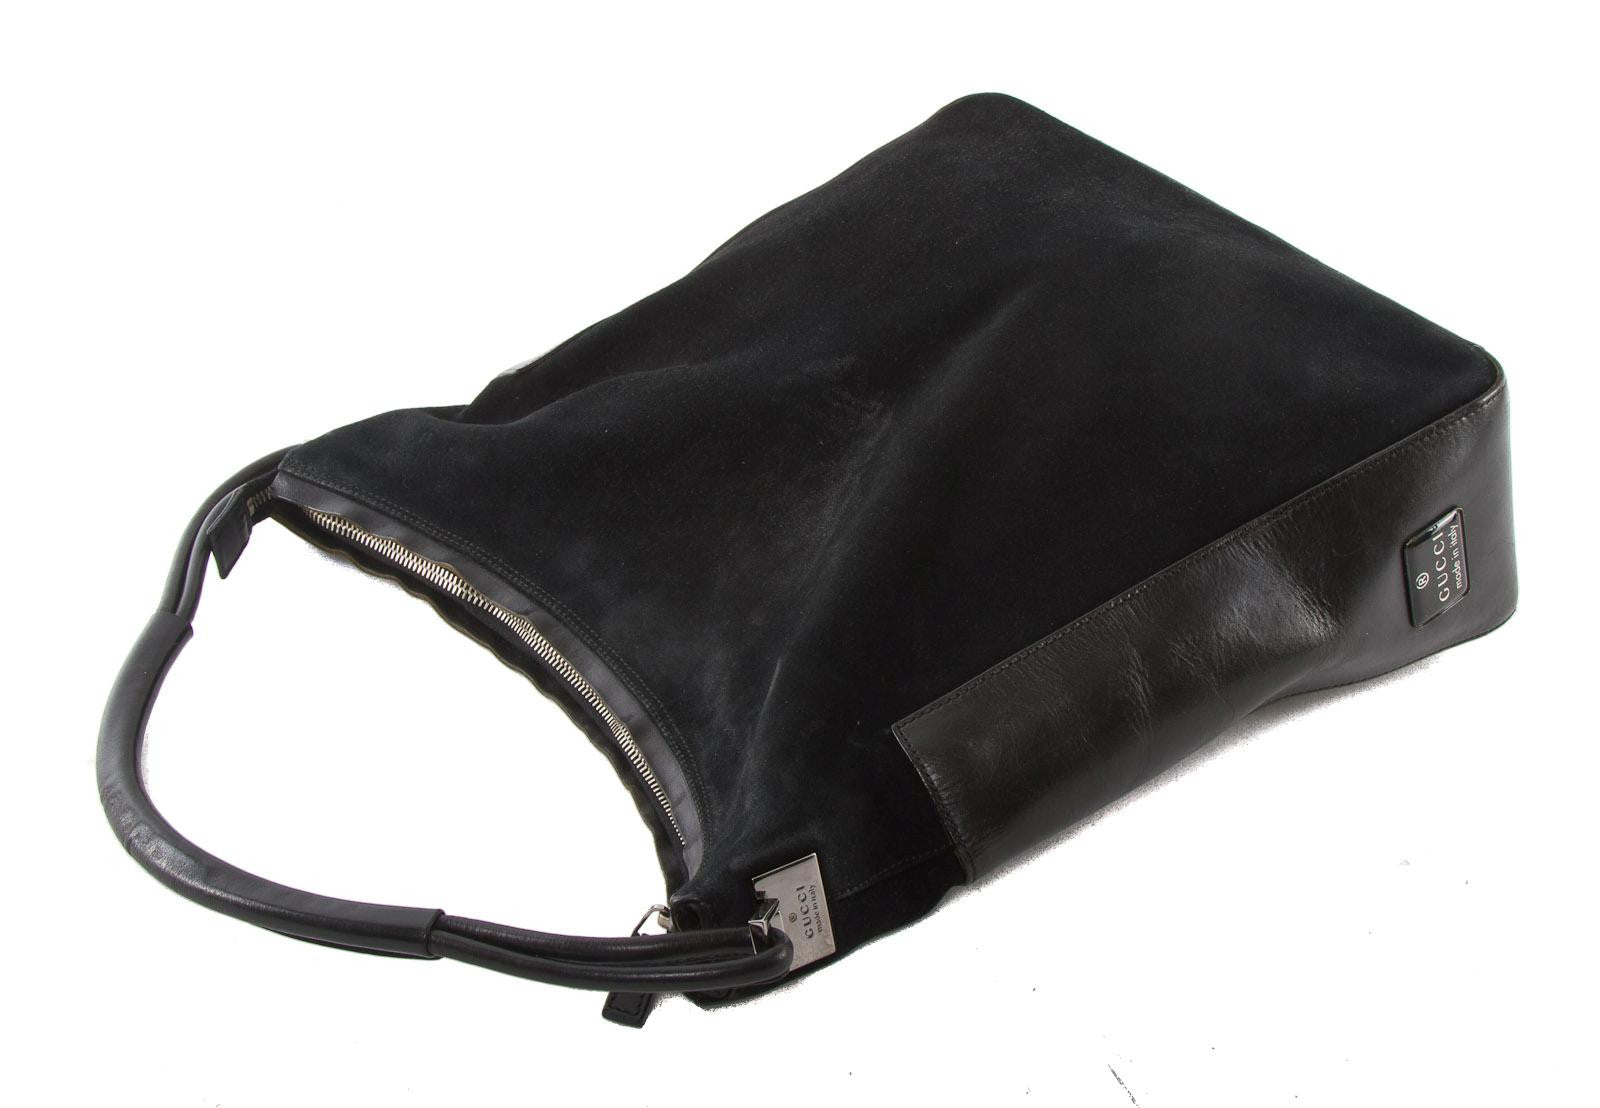 Gucci Shoulder Bag Black,Leather